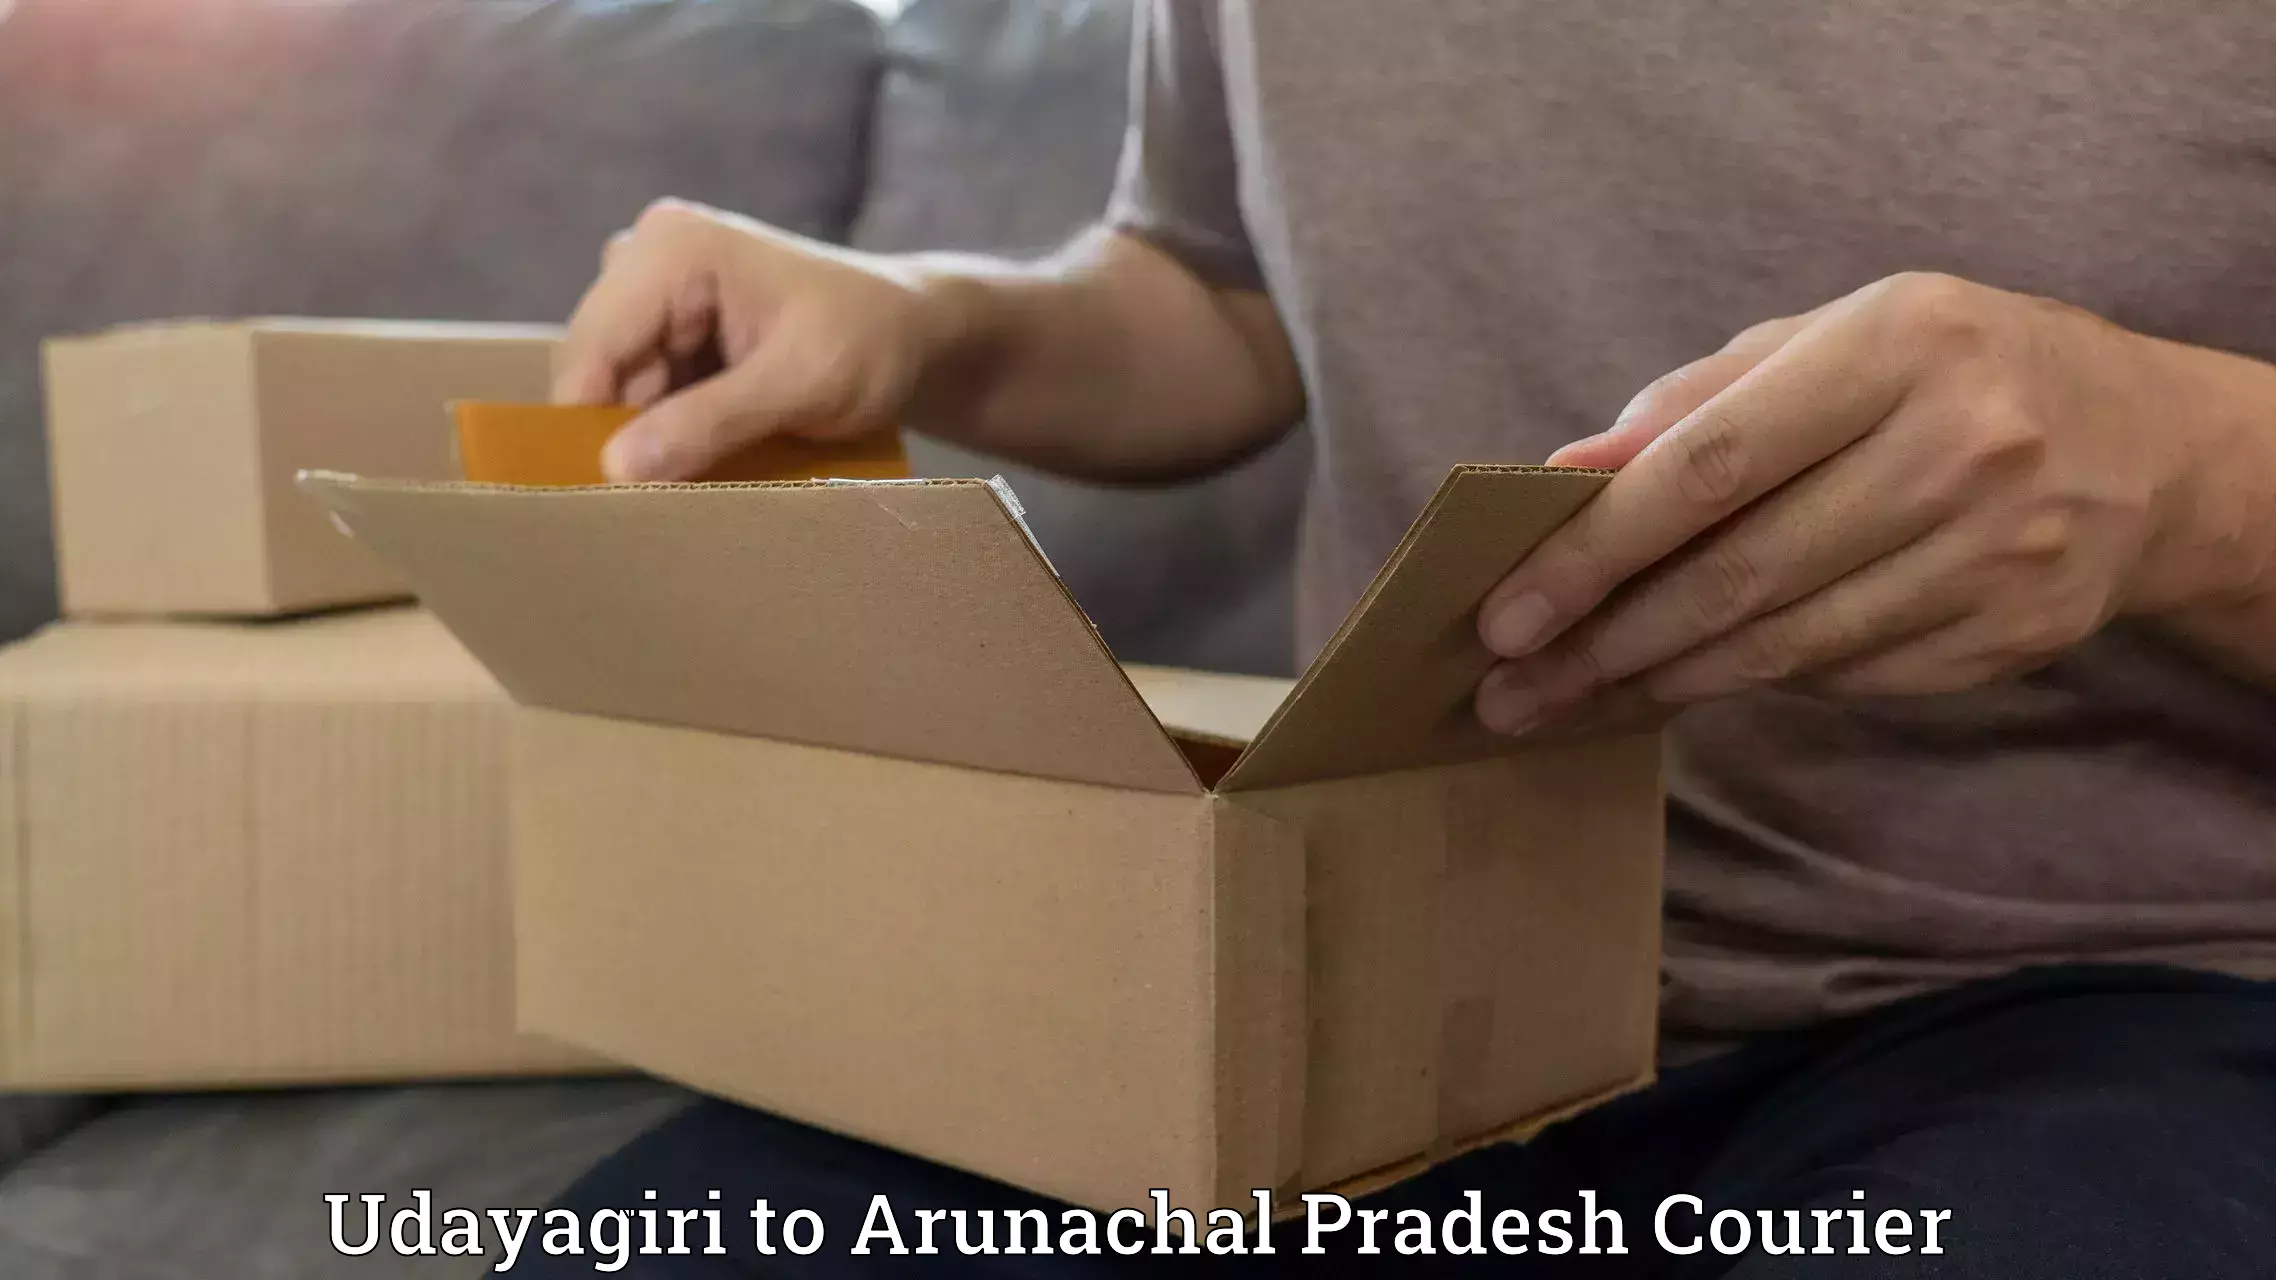 Efficient cargo services Udayagiri to Arunachal Pradesh